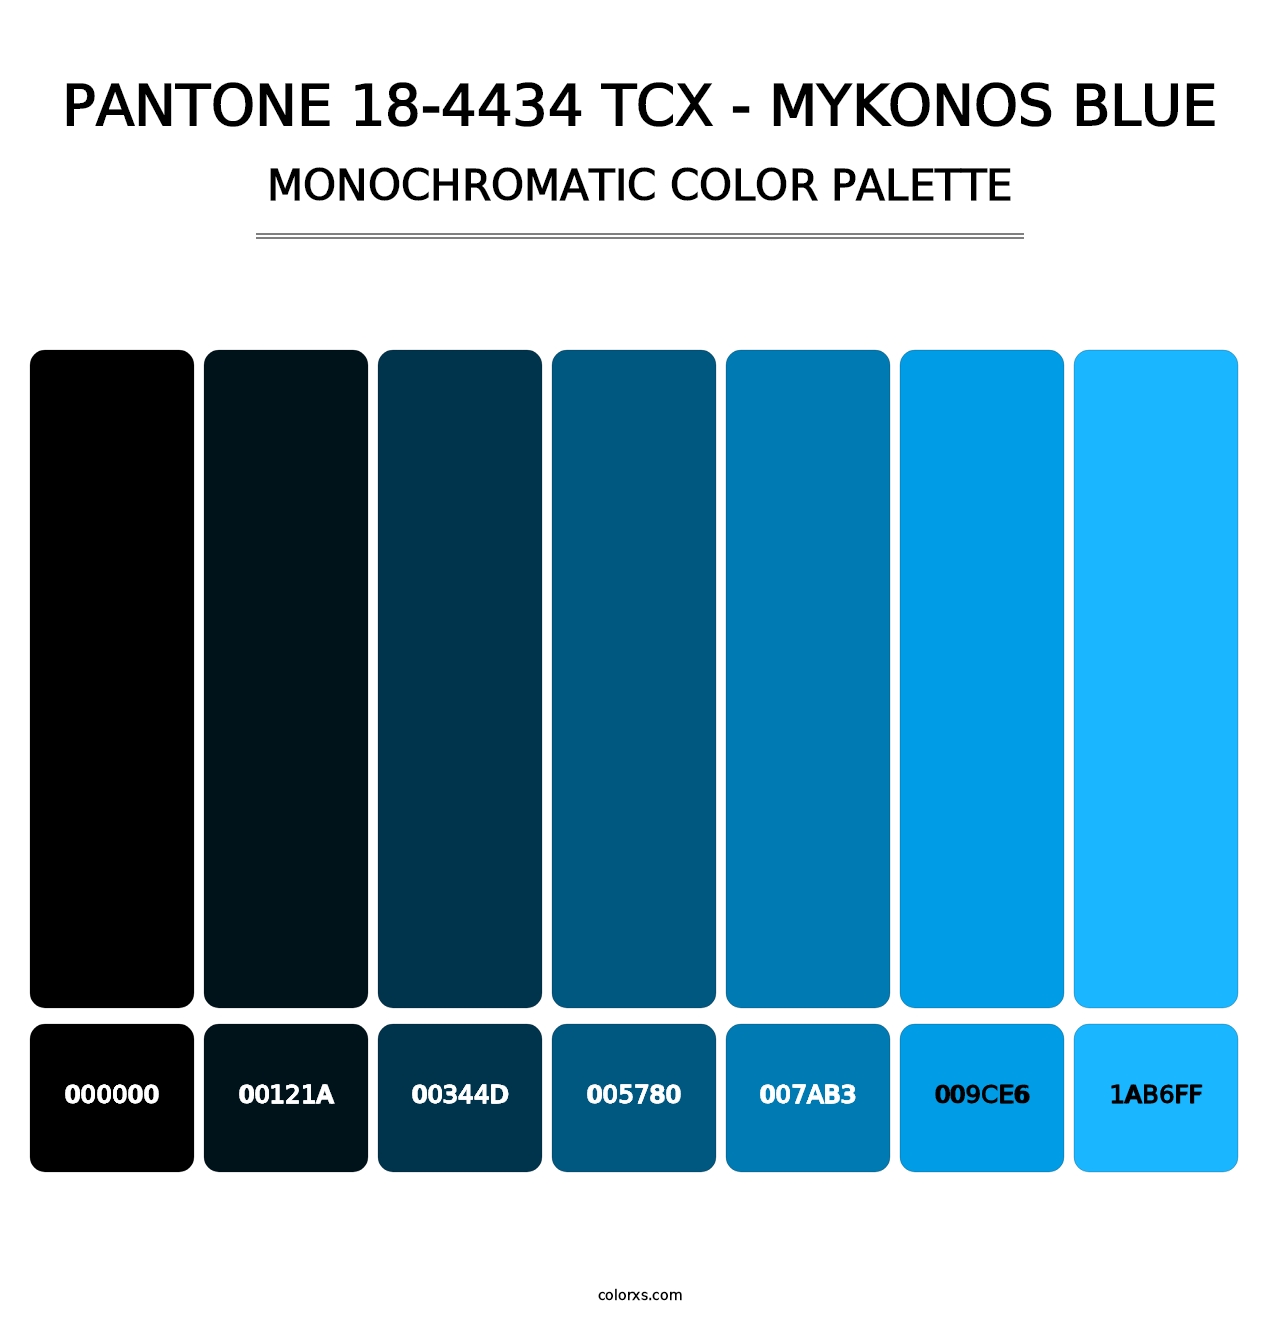 PANTONE 18-4434 TCX - Mykonos Blue - Monochromatic Color Palette